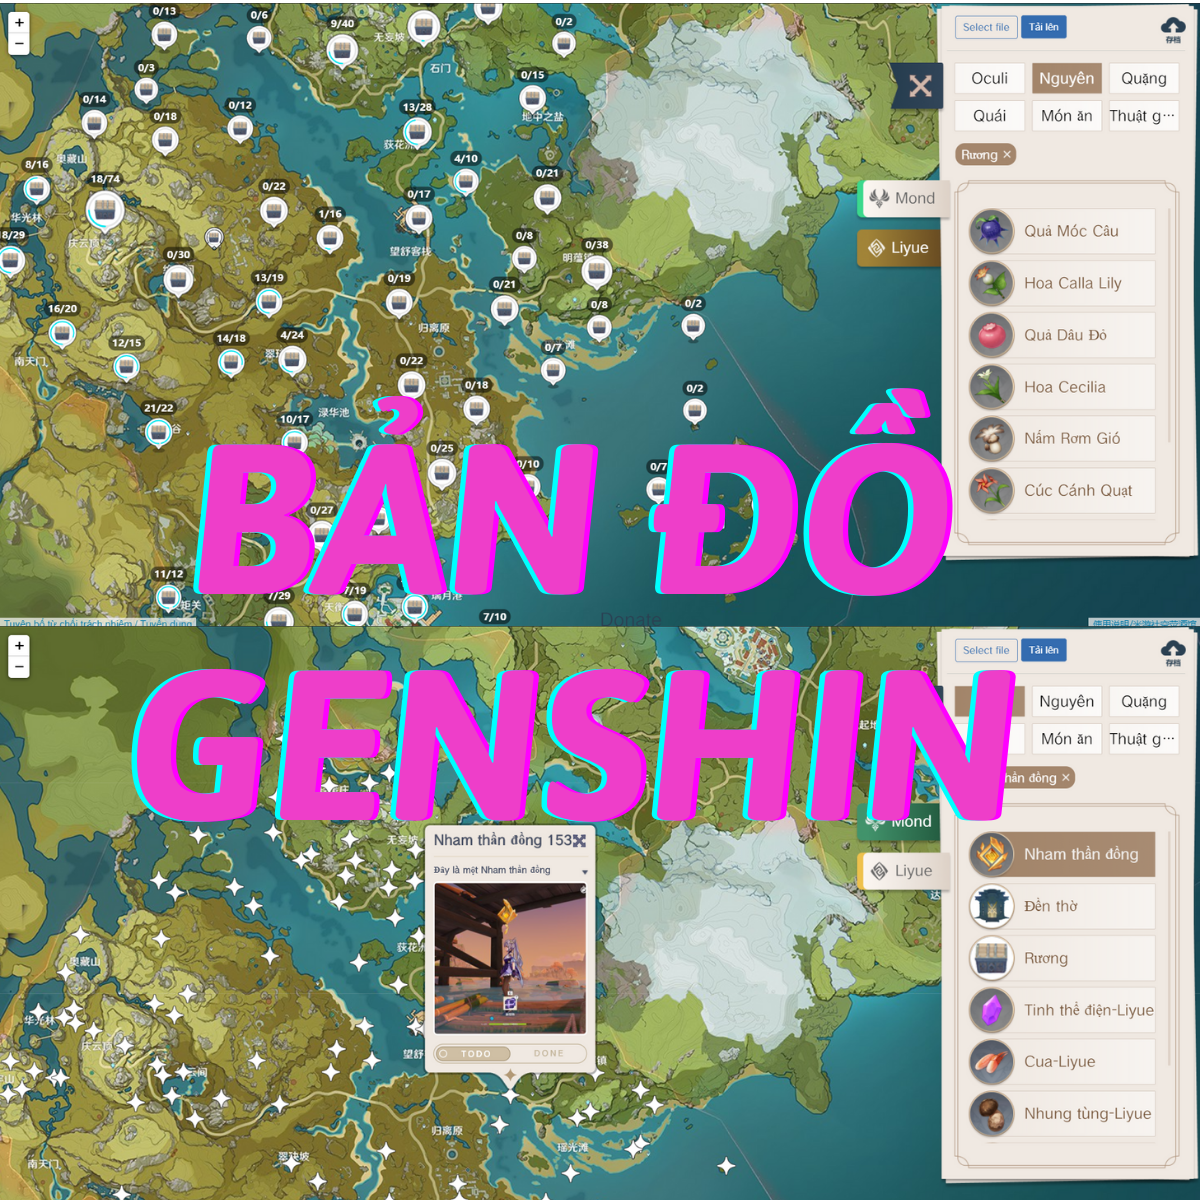 Bản đồ Genshin Impact Tiếng Việt được cập nhật thường xuyên và đầy đủ nhất để bạn có thể khám phá thế giới phong phú và đầy màu sắc này một cách hoàn hảo.